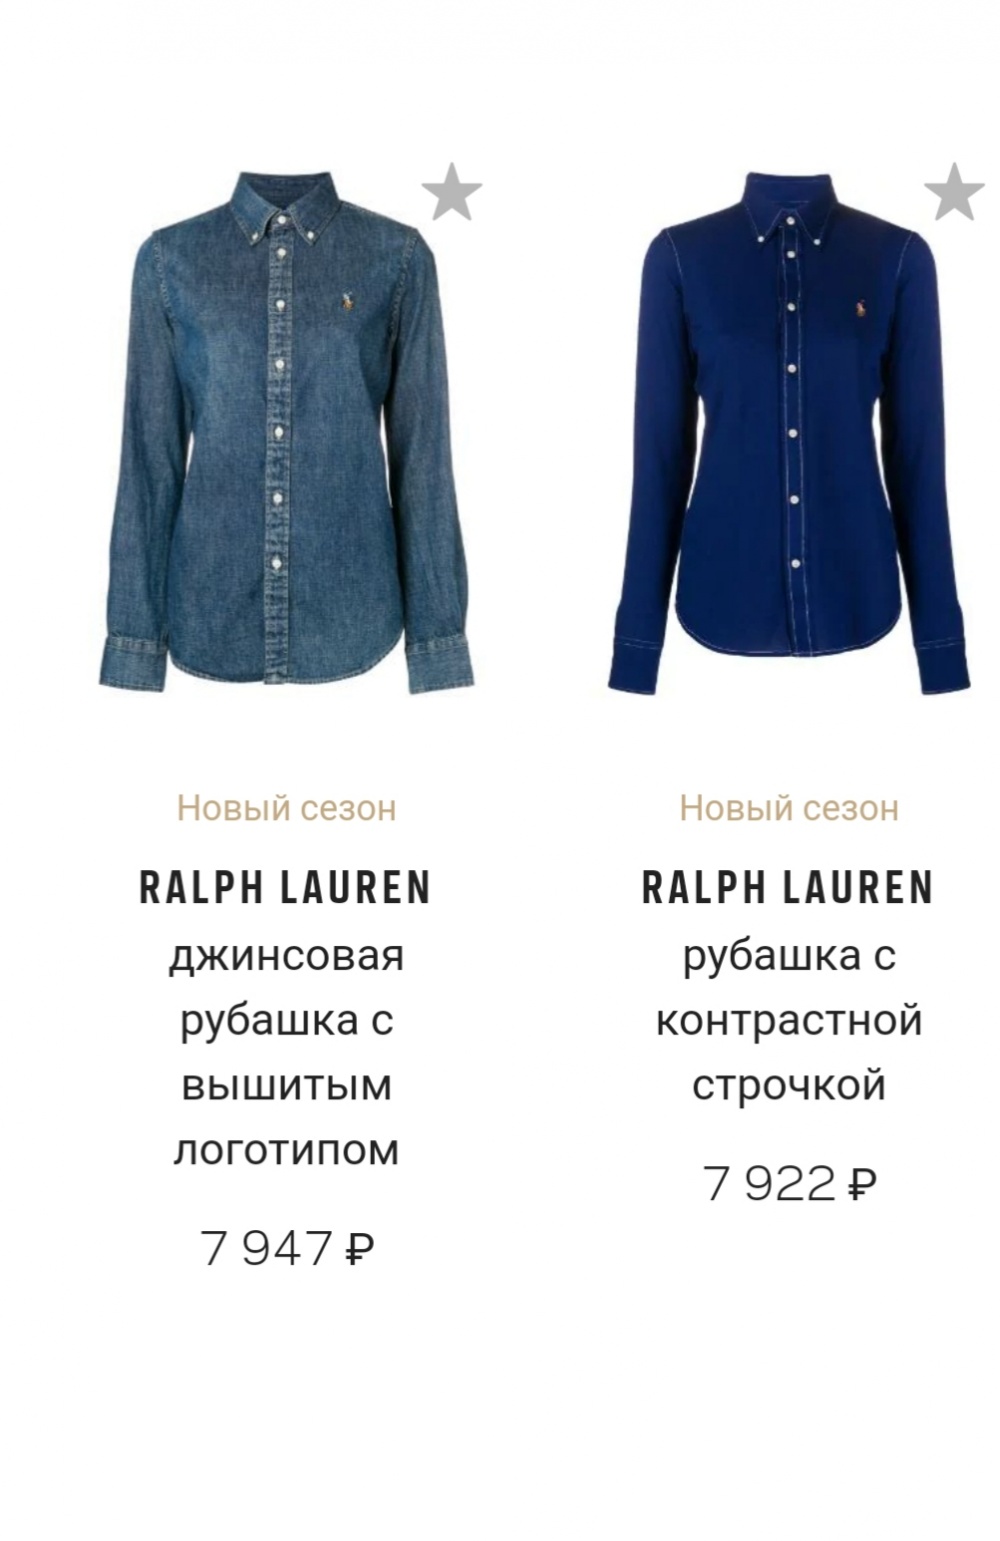 Рубашка  Ralph Lauren размер  44/46, 46